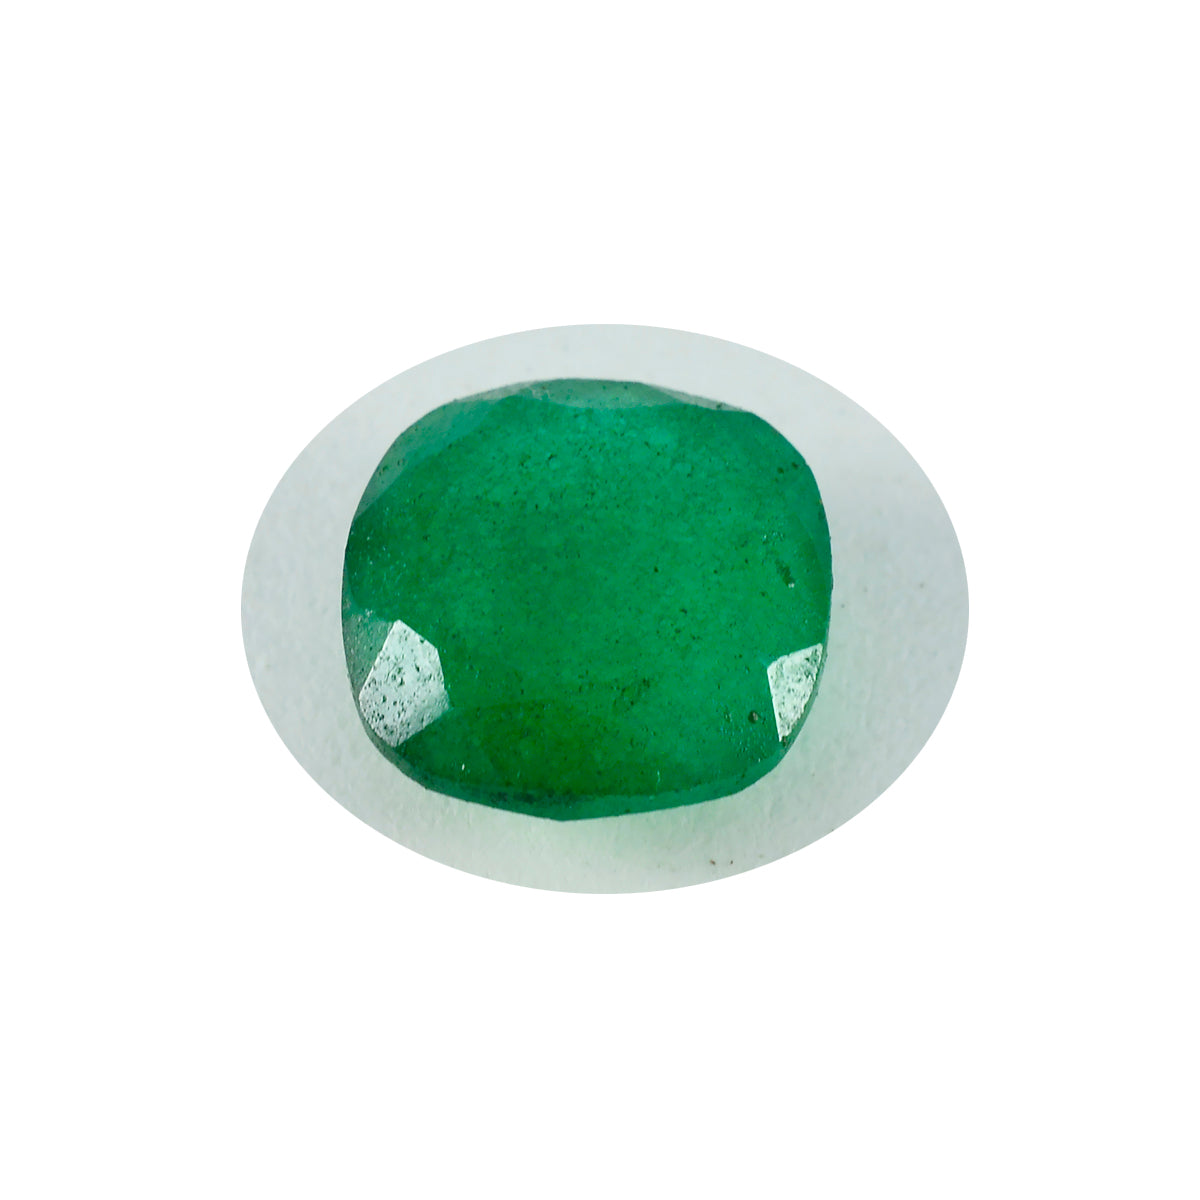 riyogems, 1 шт., настоящая зеленая яшма, граненая 12x12 мм, в форме подушки, красивые качественные свободные драгоценные камни